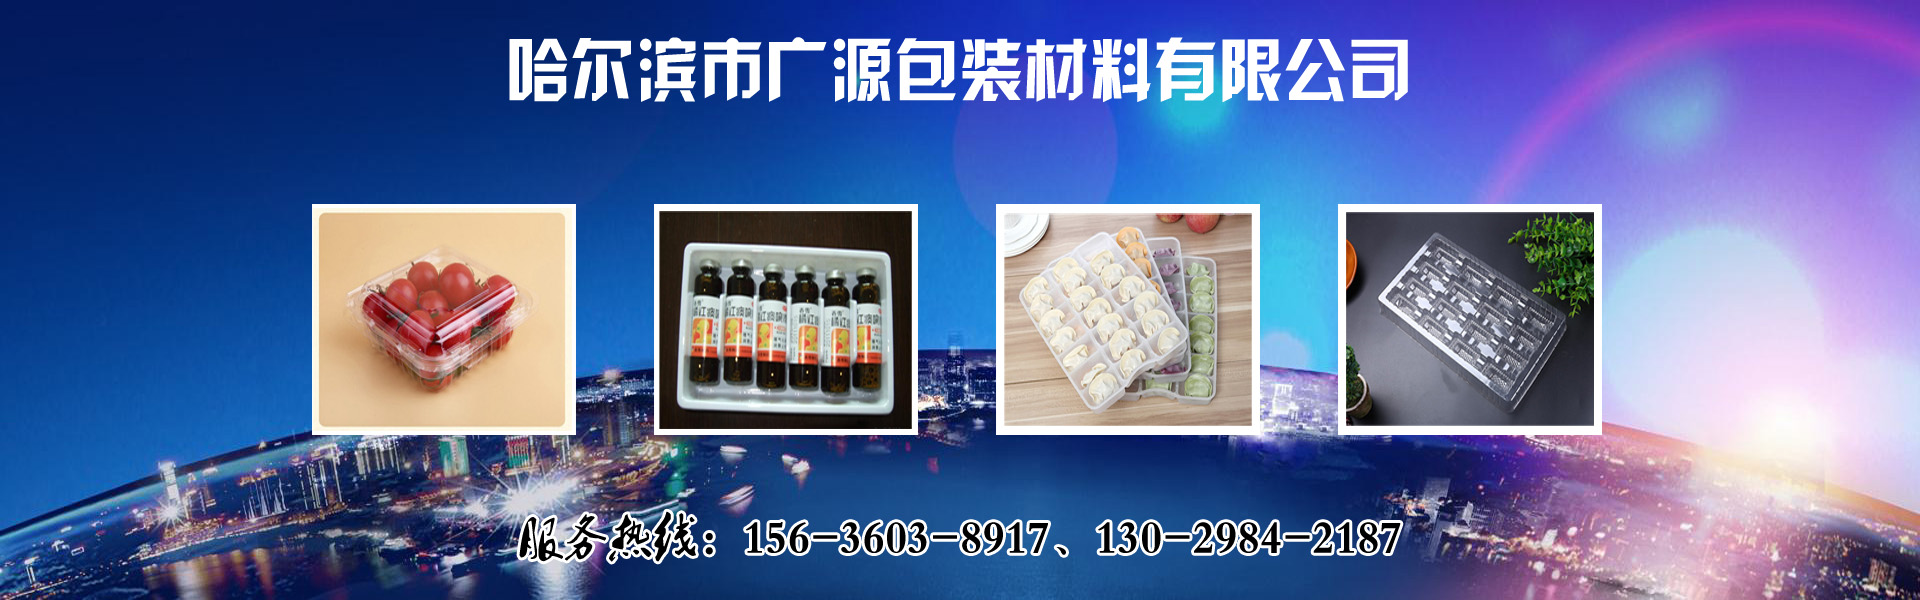 黑龍江塑料托盒生產廠家